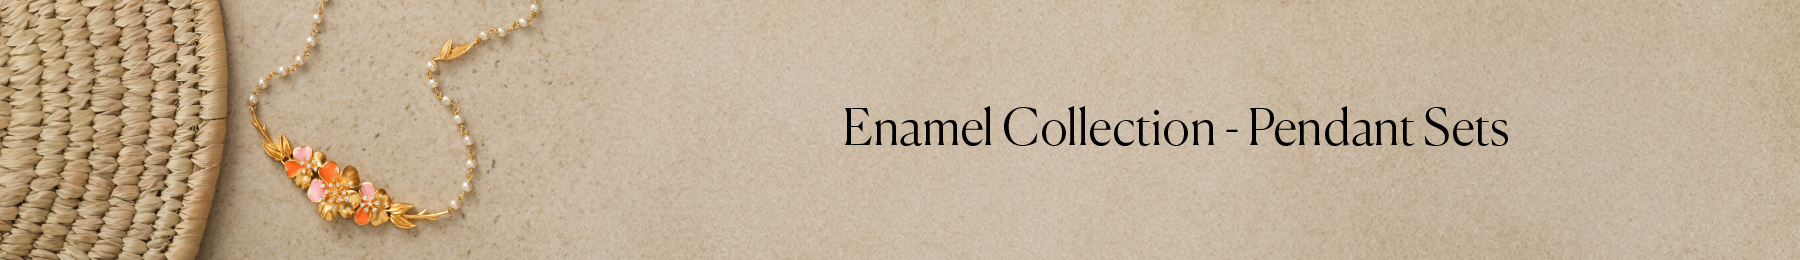 Enamel Collection - Pendant Sets